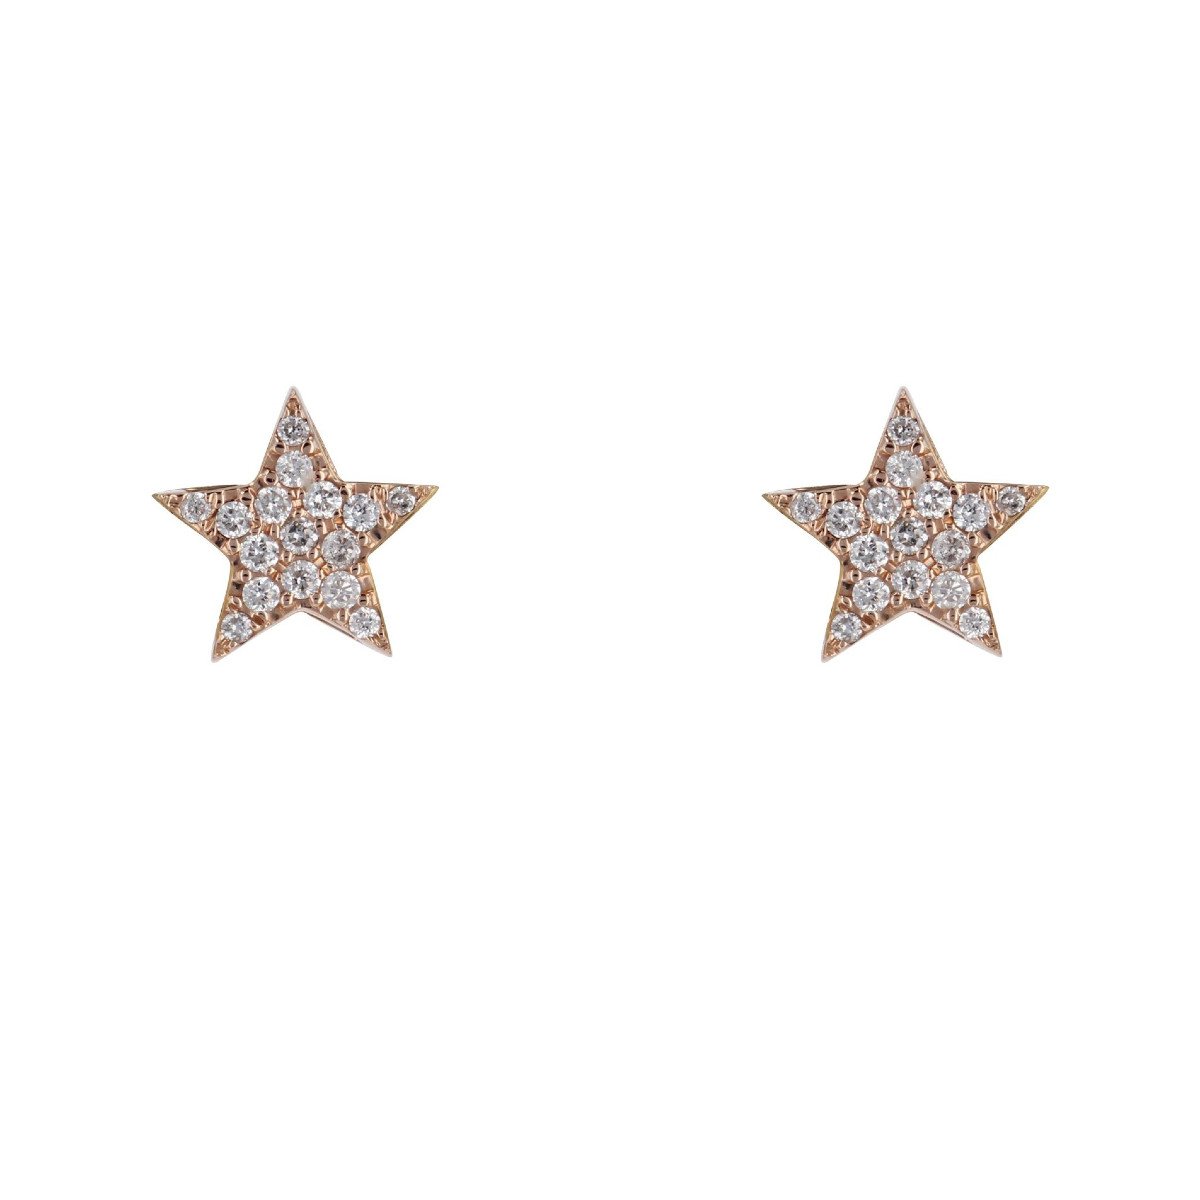 Rose Gold Diamond Star Earrings